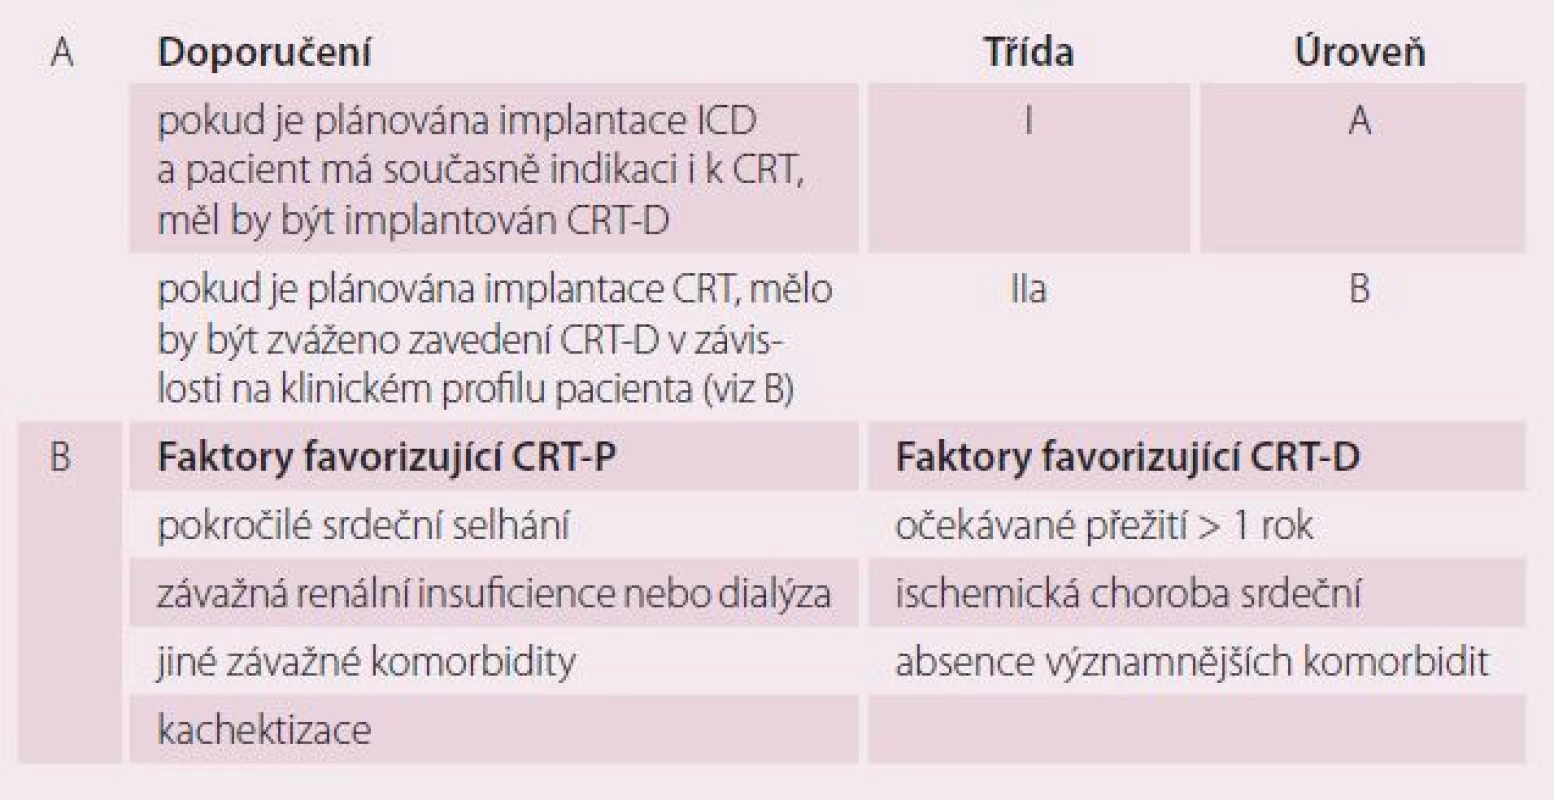 Indikace kombinované terapie CRT + ICD (A) a faktory, které je vhodné při volbě mezi CRT-P a CRT-D zohlednit (B).